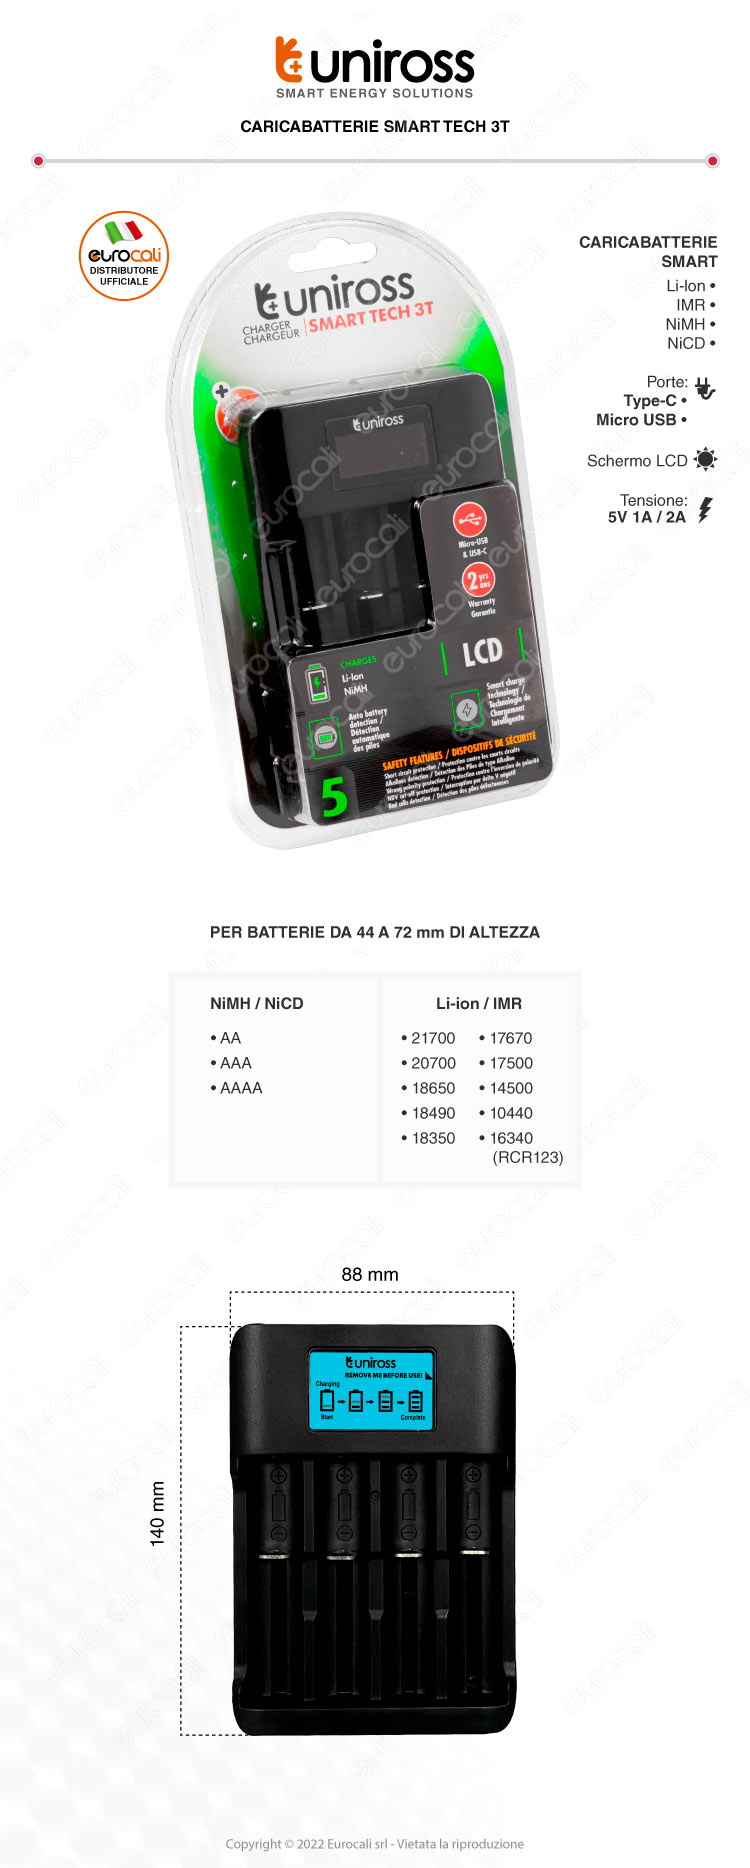 uniross smart tech 3t quick charger caricabatterie 4 pile nimh li-ion